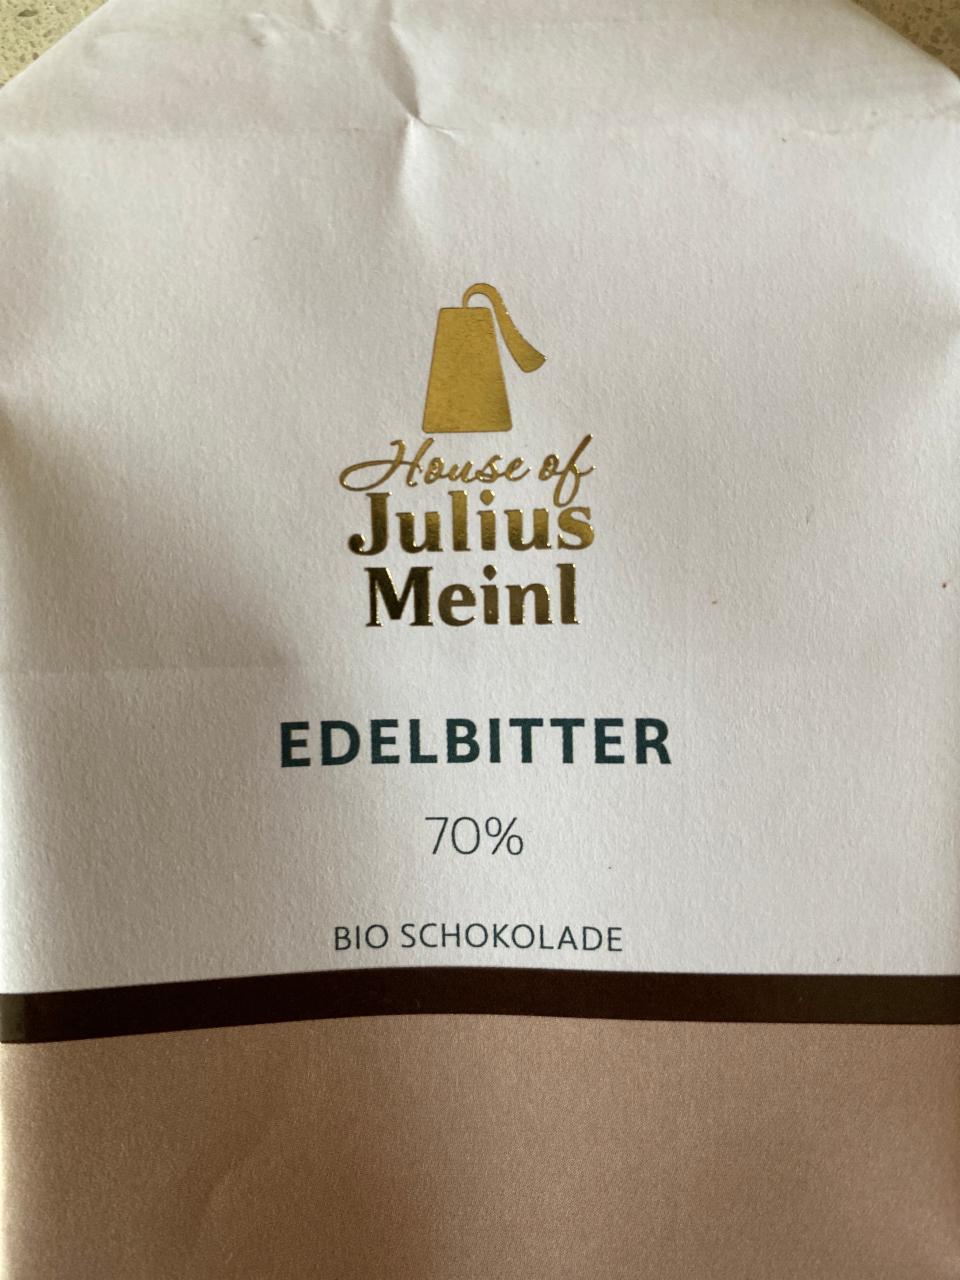 Fotografie - Edelbitter 70% Bio Schokolade Julius Meinl